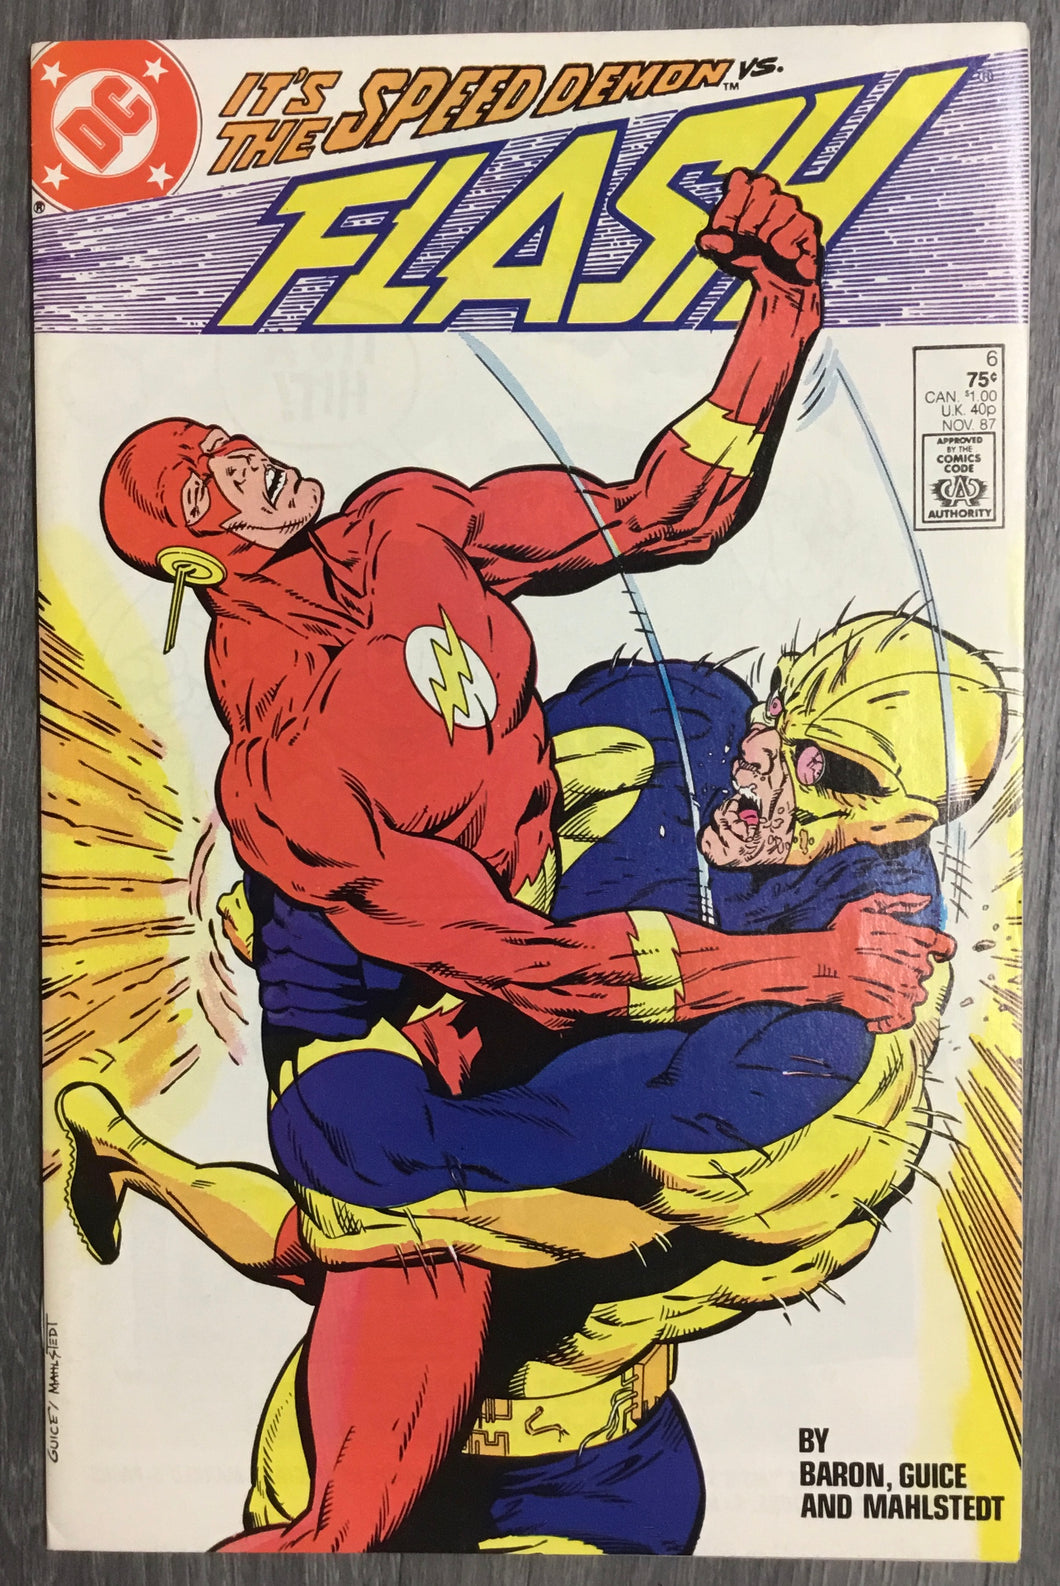 The Flash No. #6 1987 DC Comics